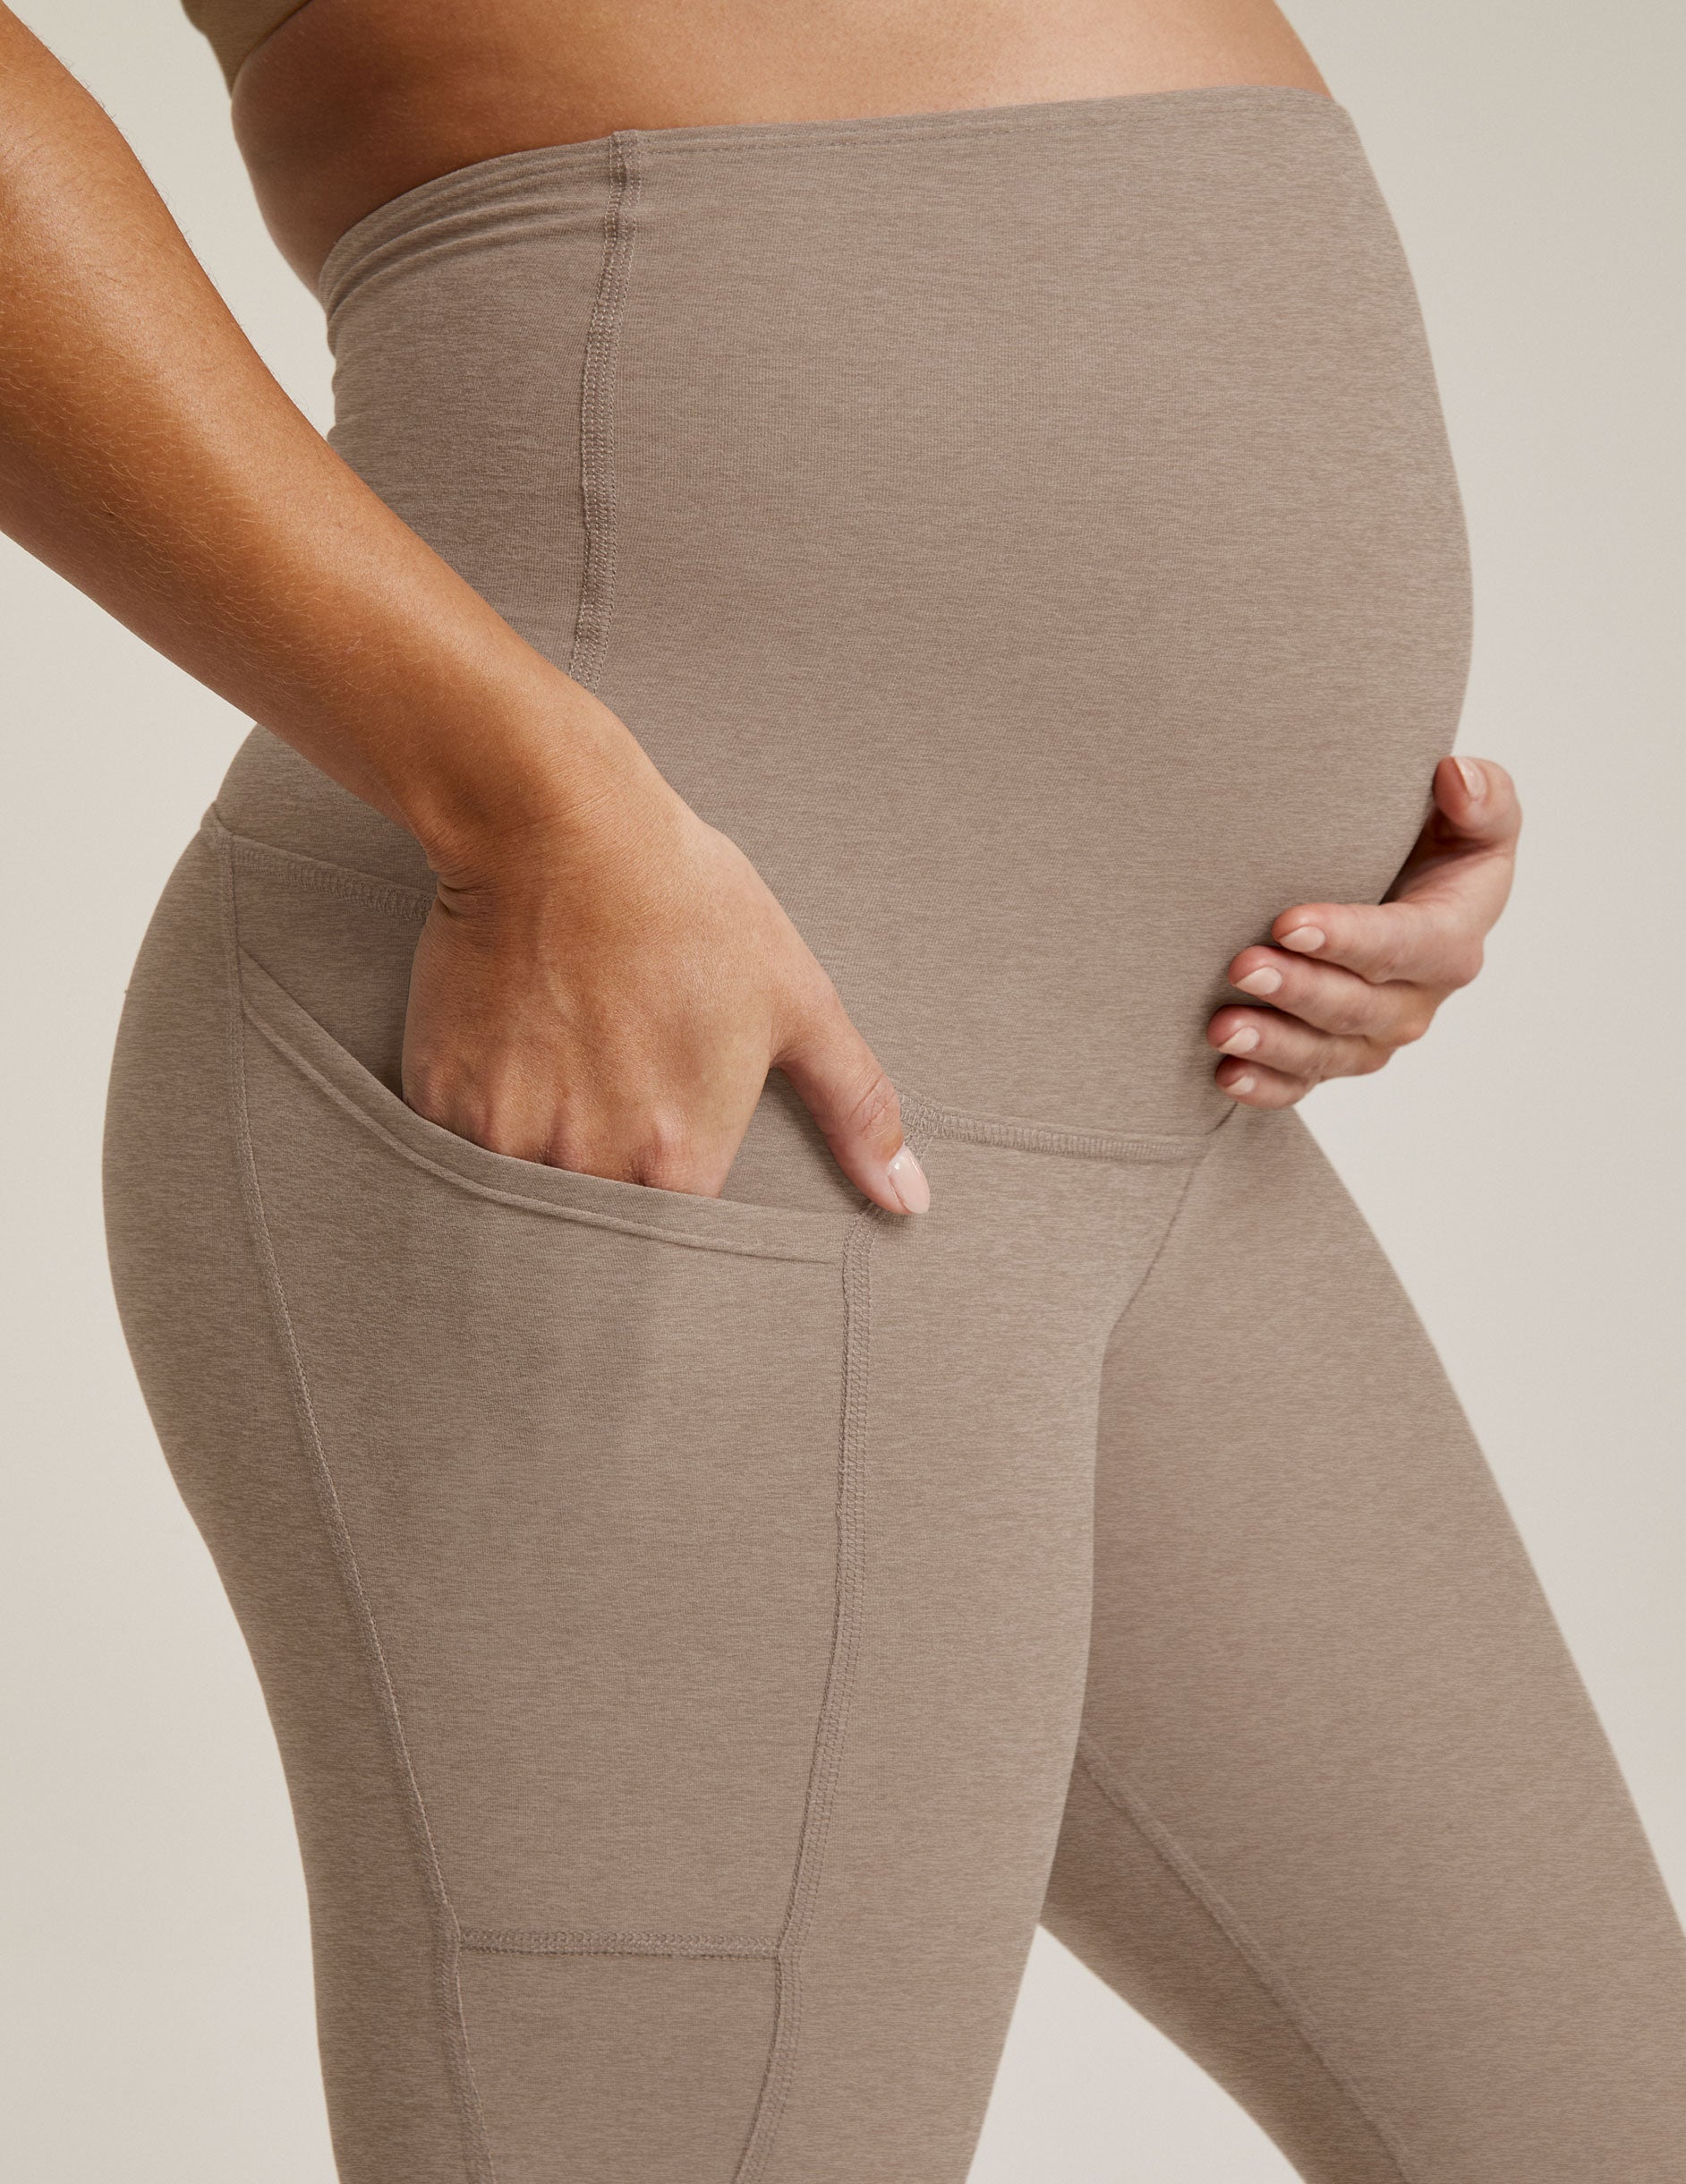 Womens Leggings | Best Black Pocket Leggings | Yoga Pants – MomMe and More